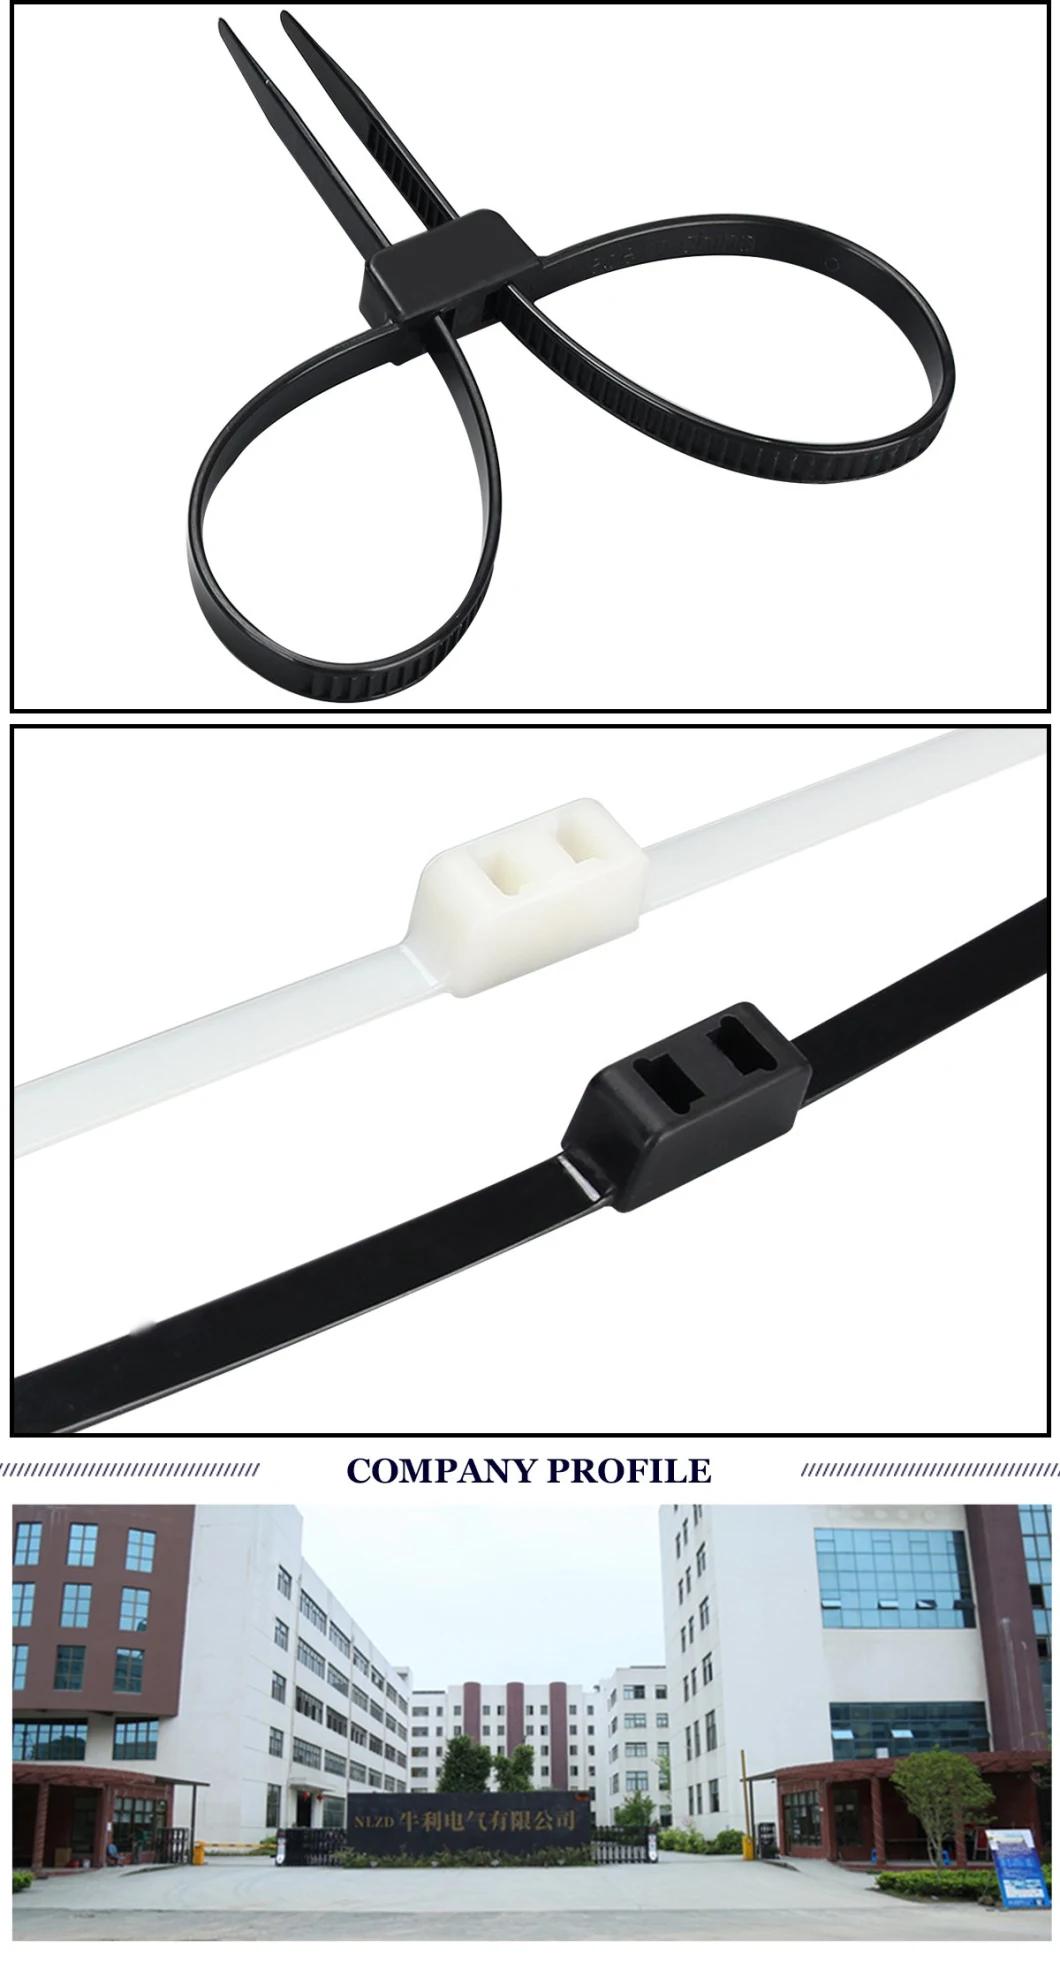 12*500 Nylon 66 Wire Plastic Handcuff Cable Ties